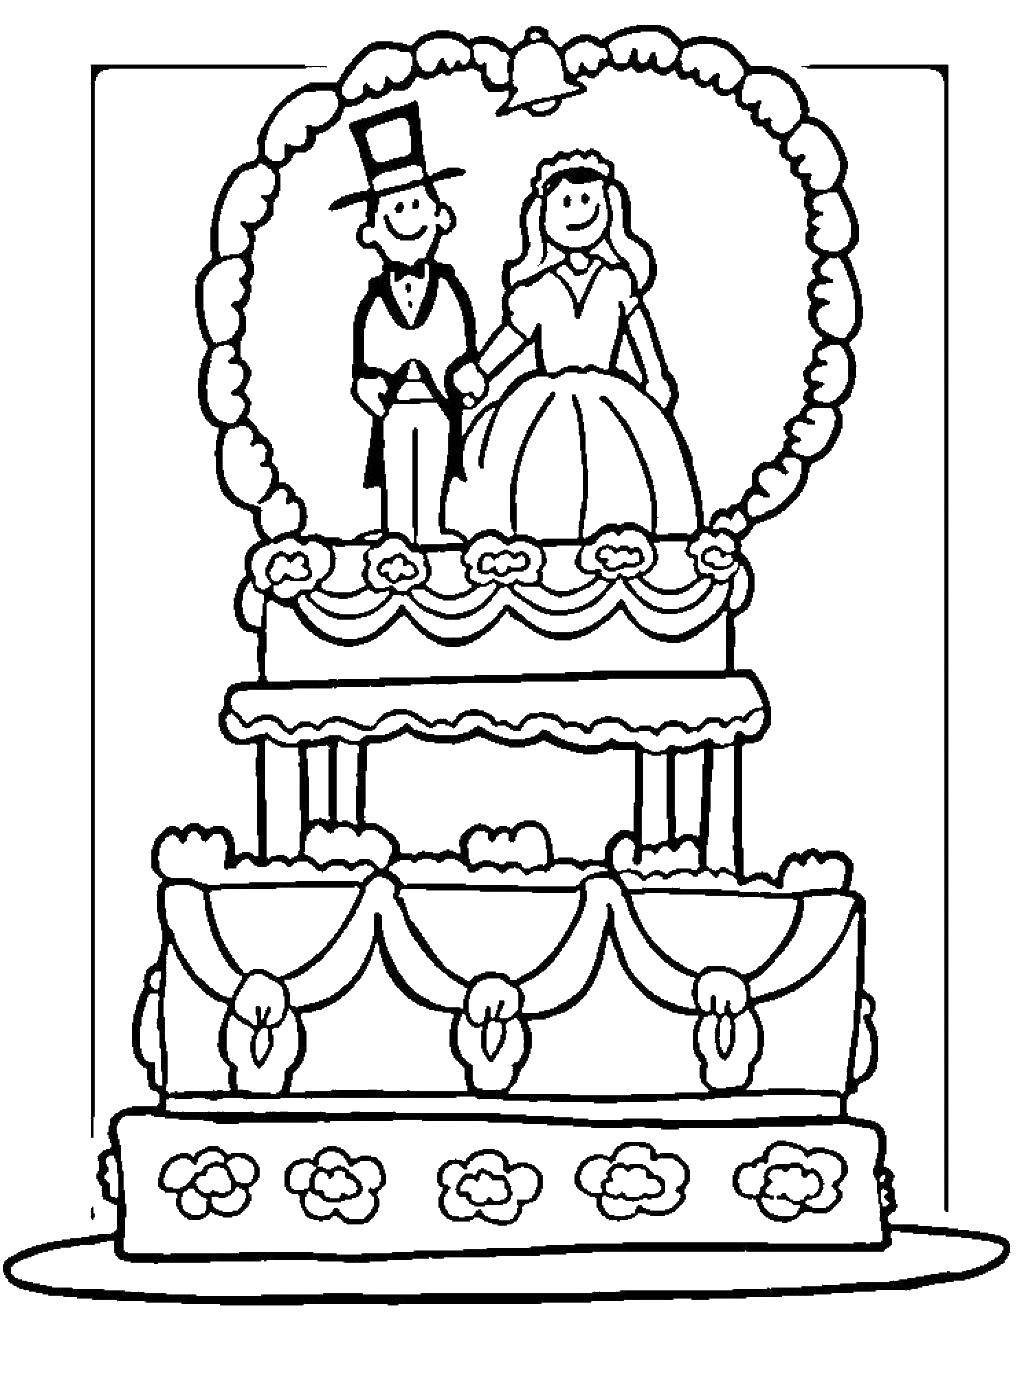 Название: Раскраска Свадебный торт с фигурками жениха и невесты. Категория: Свадьба. Теги: свадьба, платье, торт.